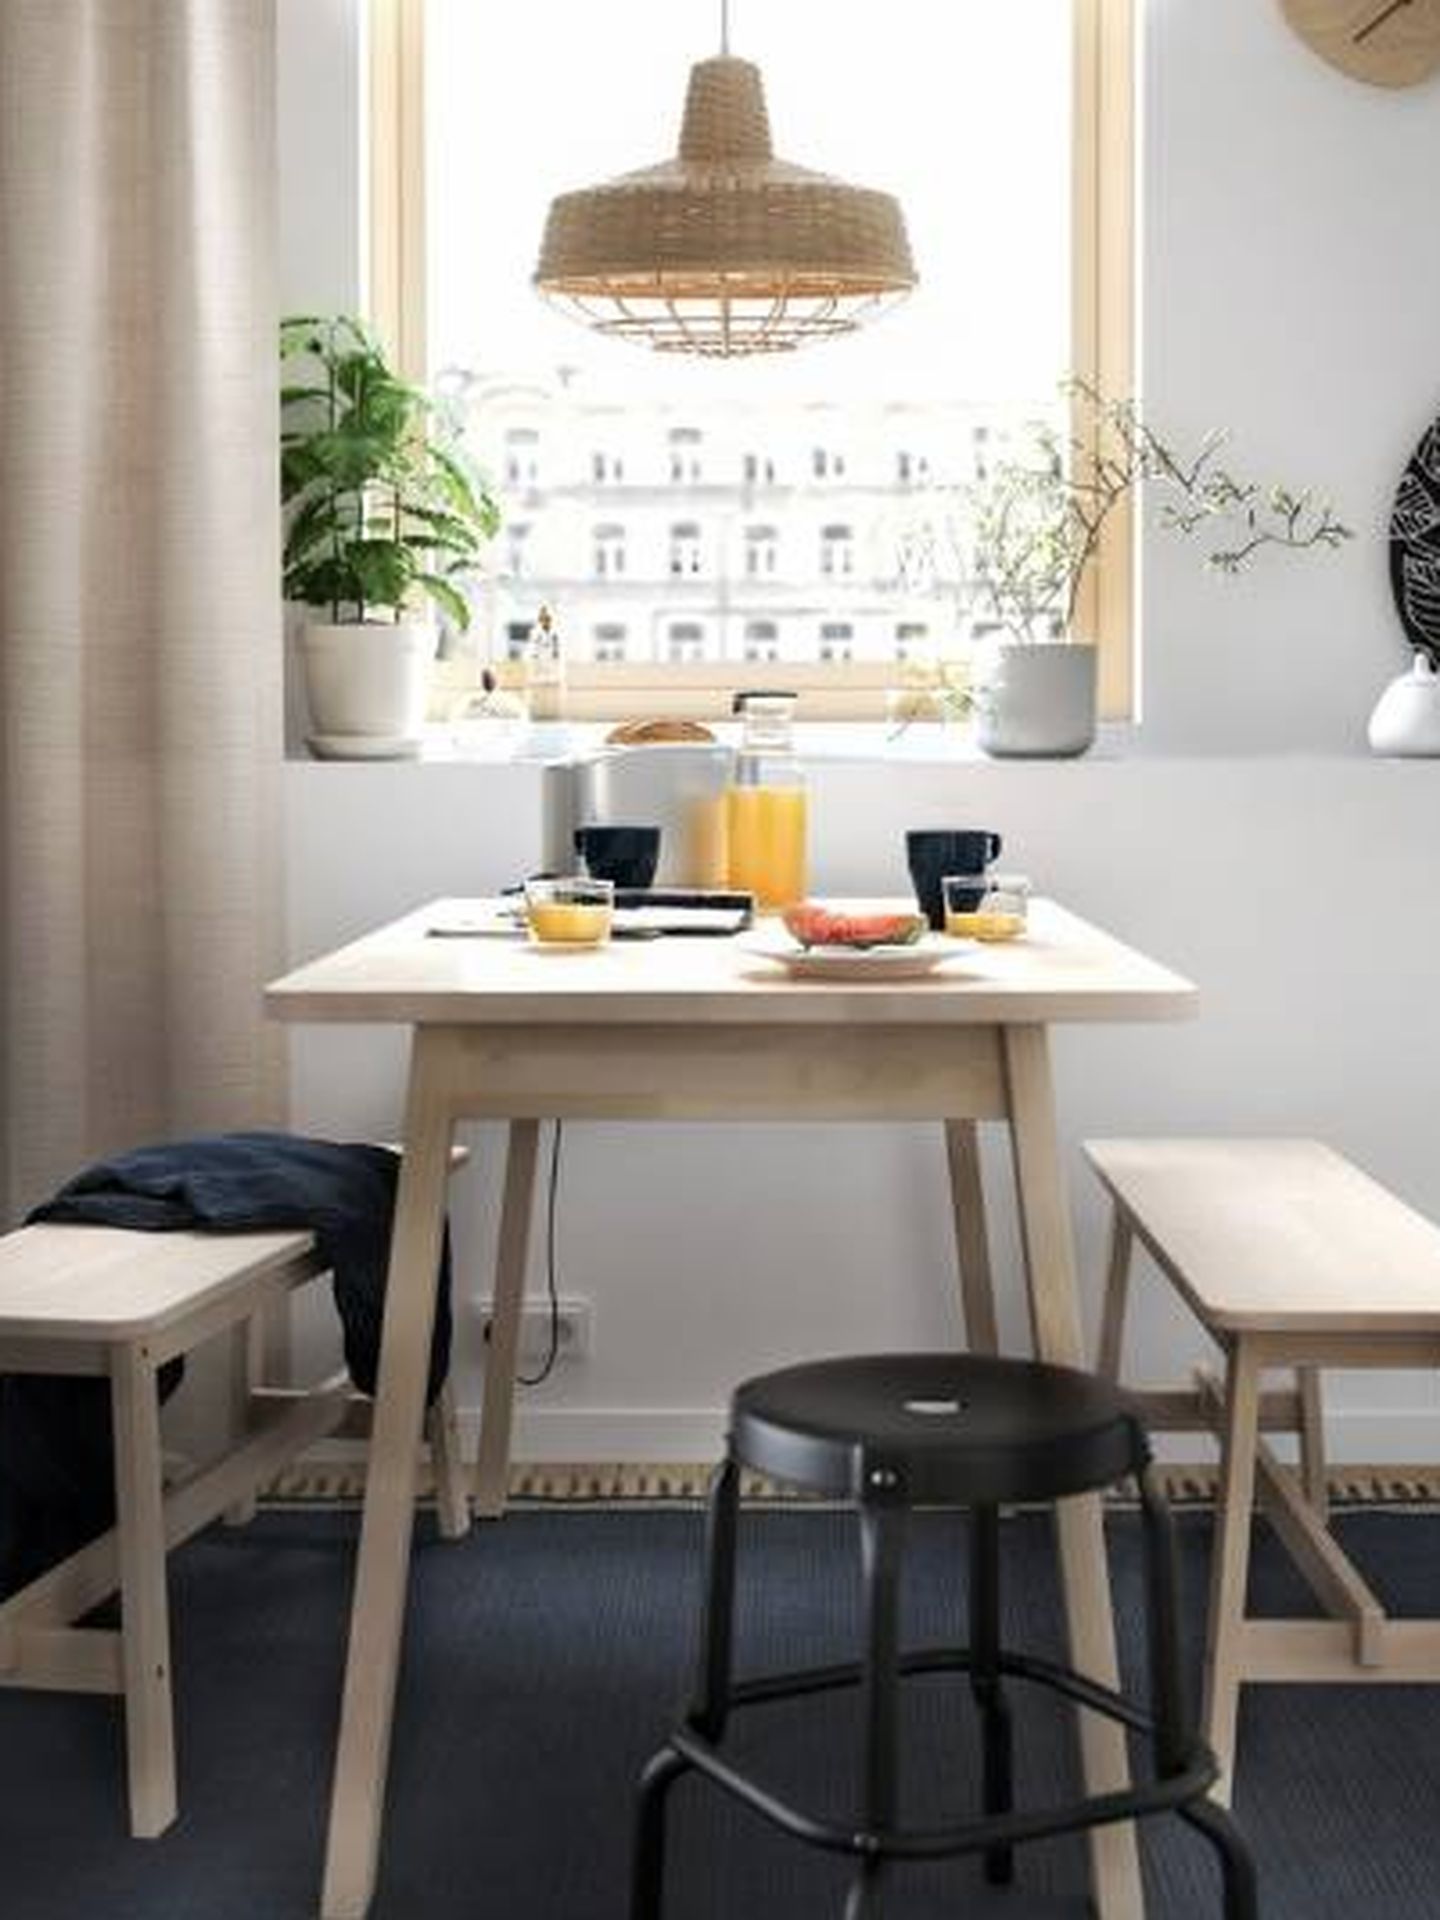 Inspiración para una cocina pequeña - IKEA